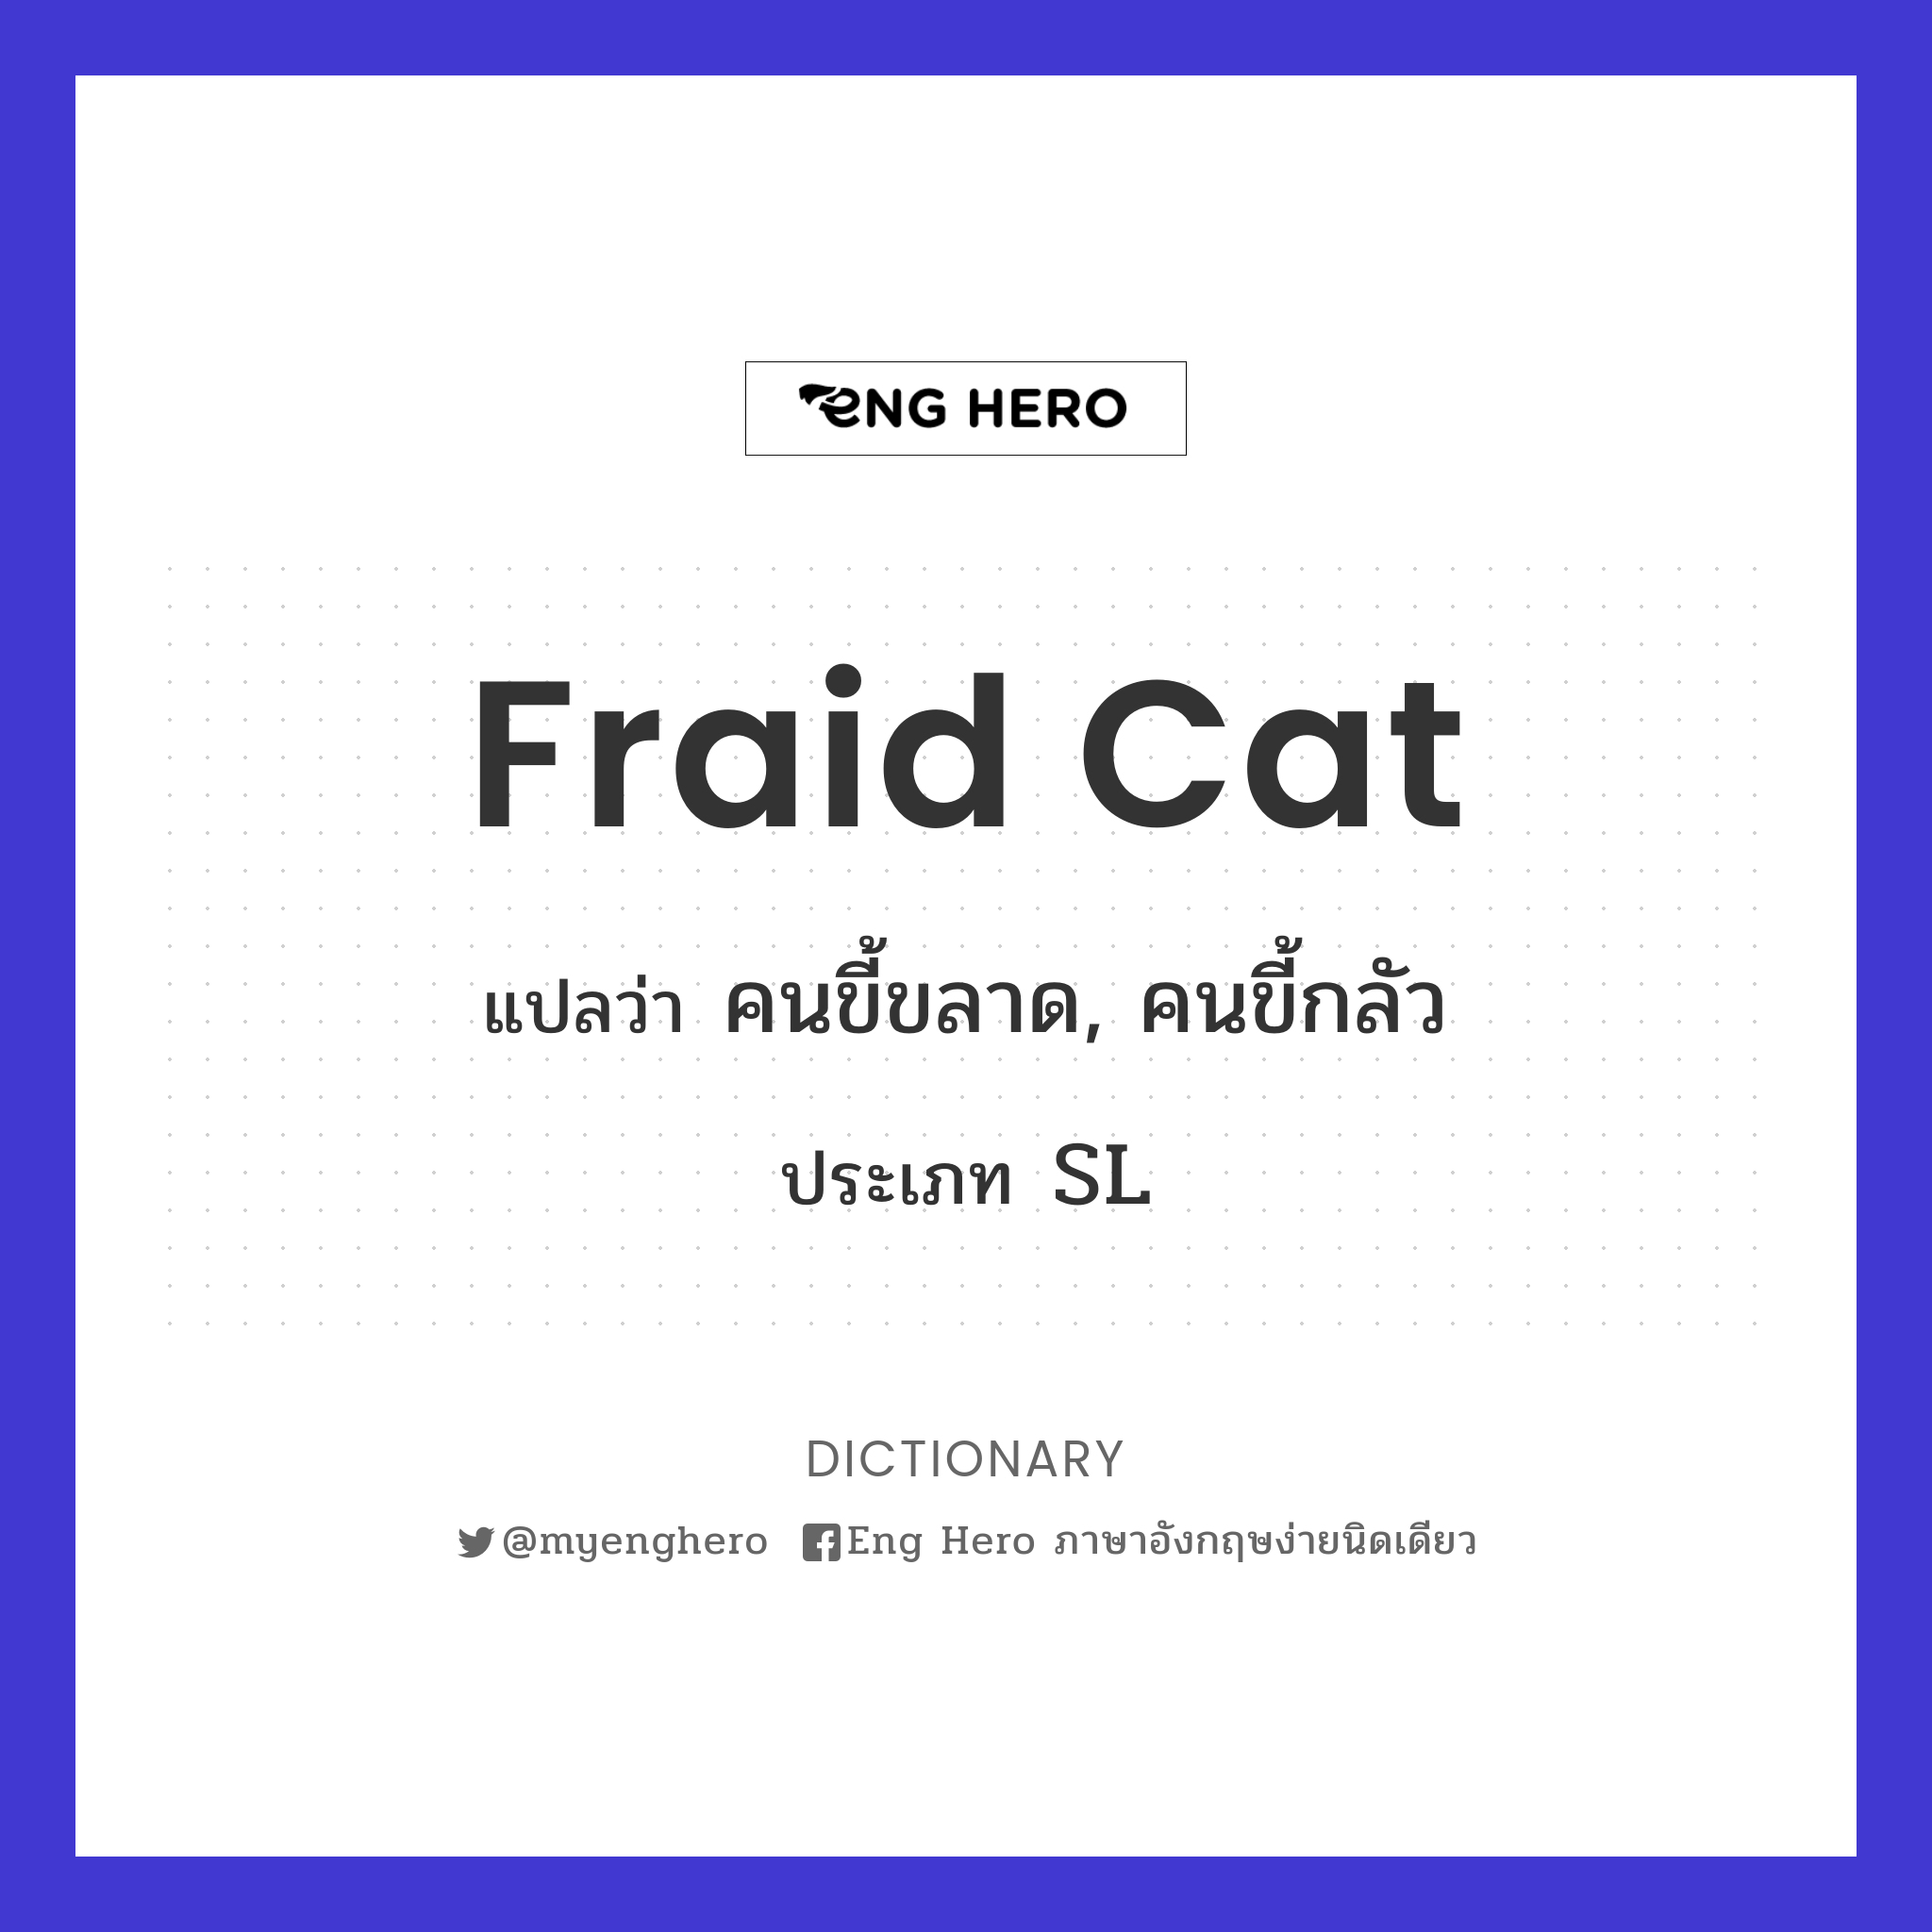 fraid cat